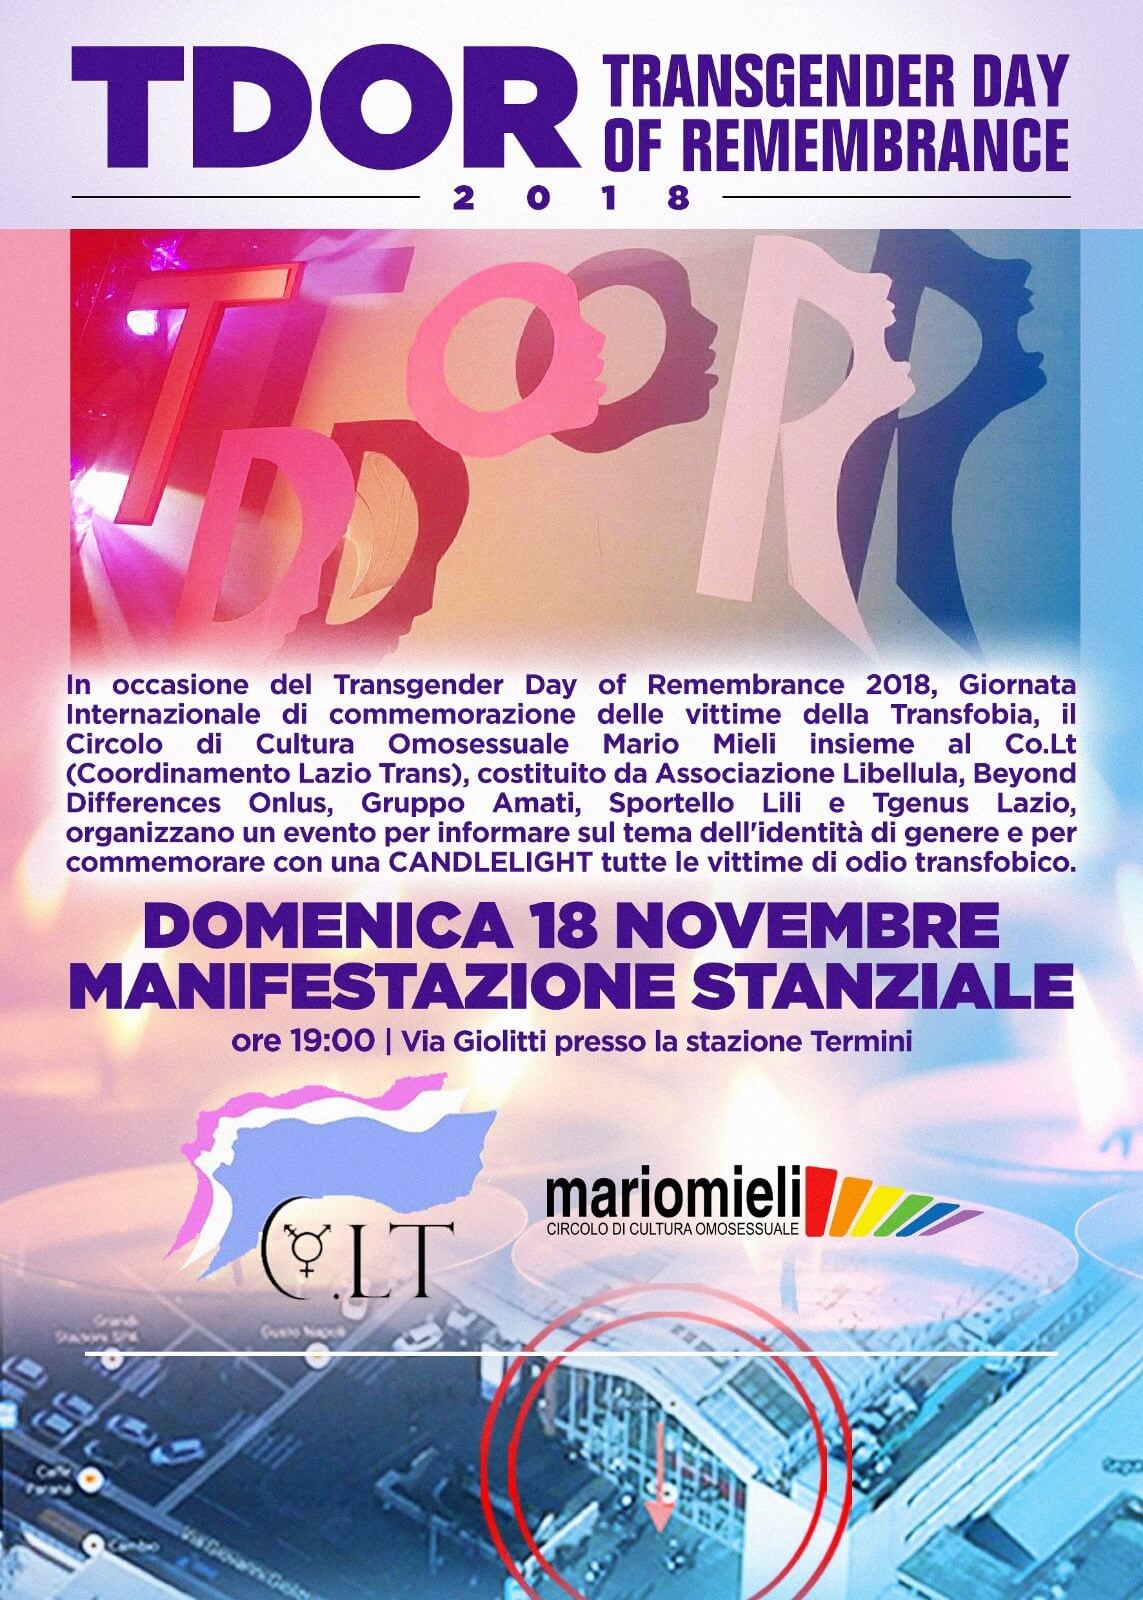 TDOR 2018 - a Roma un evento per commemorare le vittime di transfobia - TDOR 2018 - Gay.it